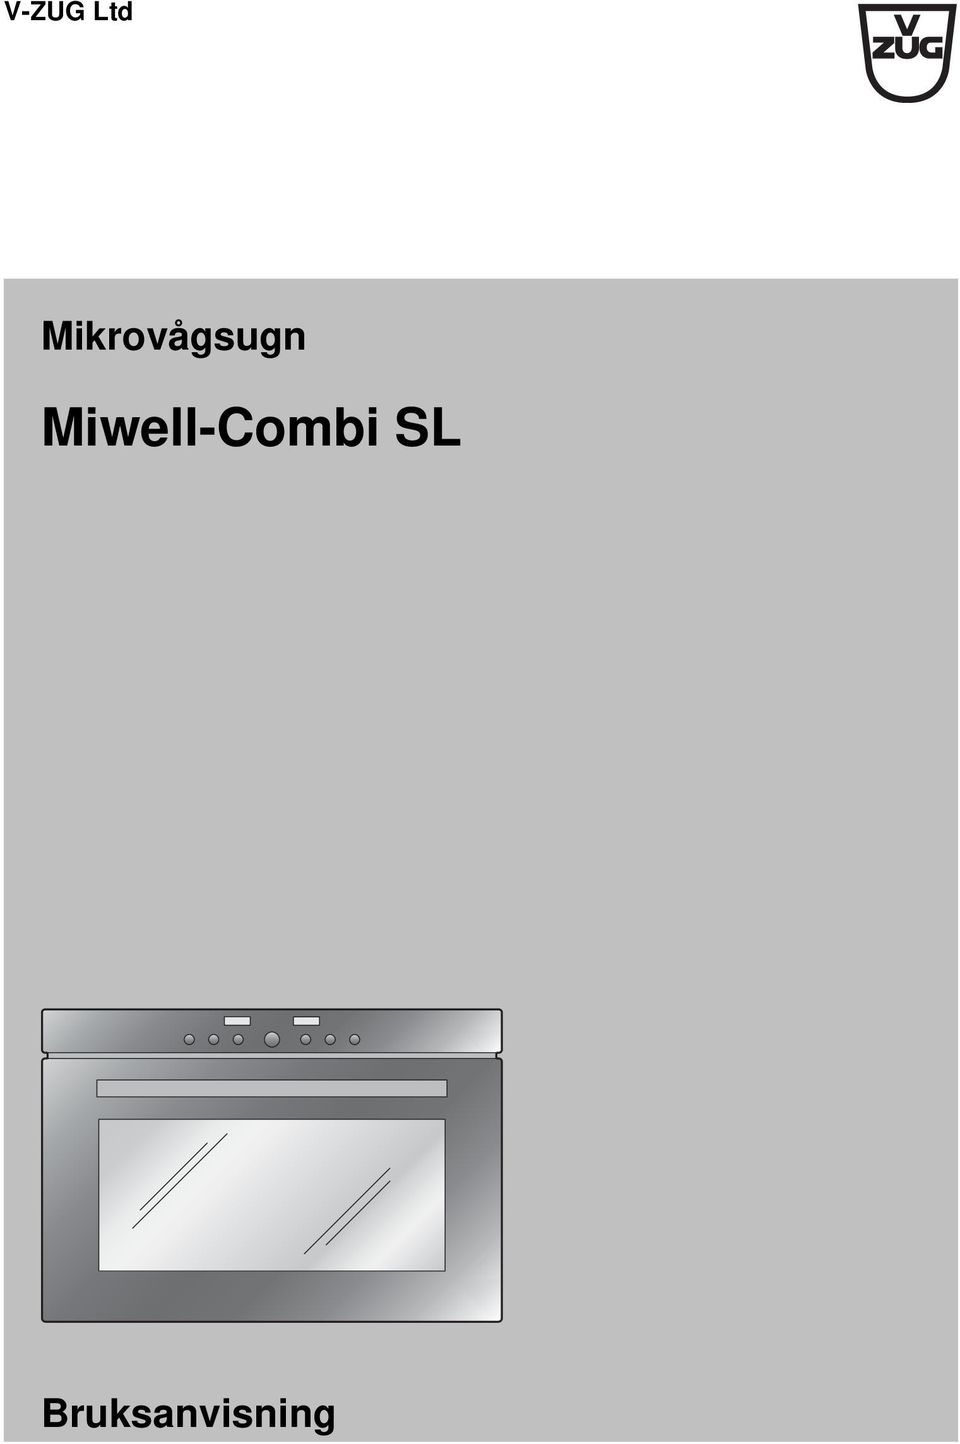 Miwell-Combi